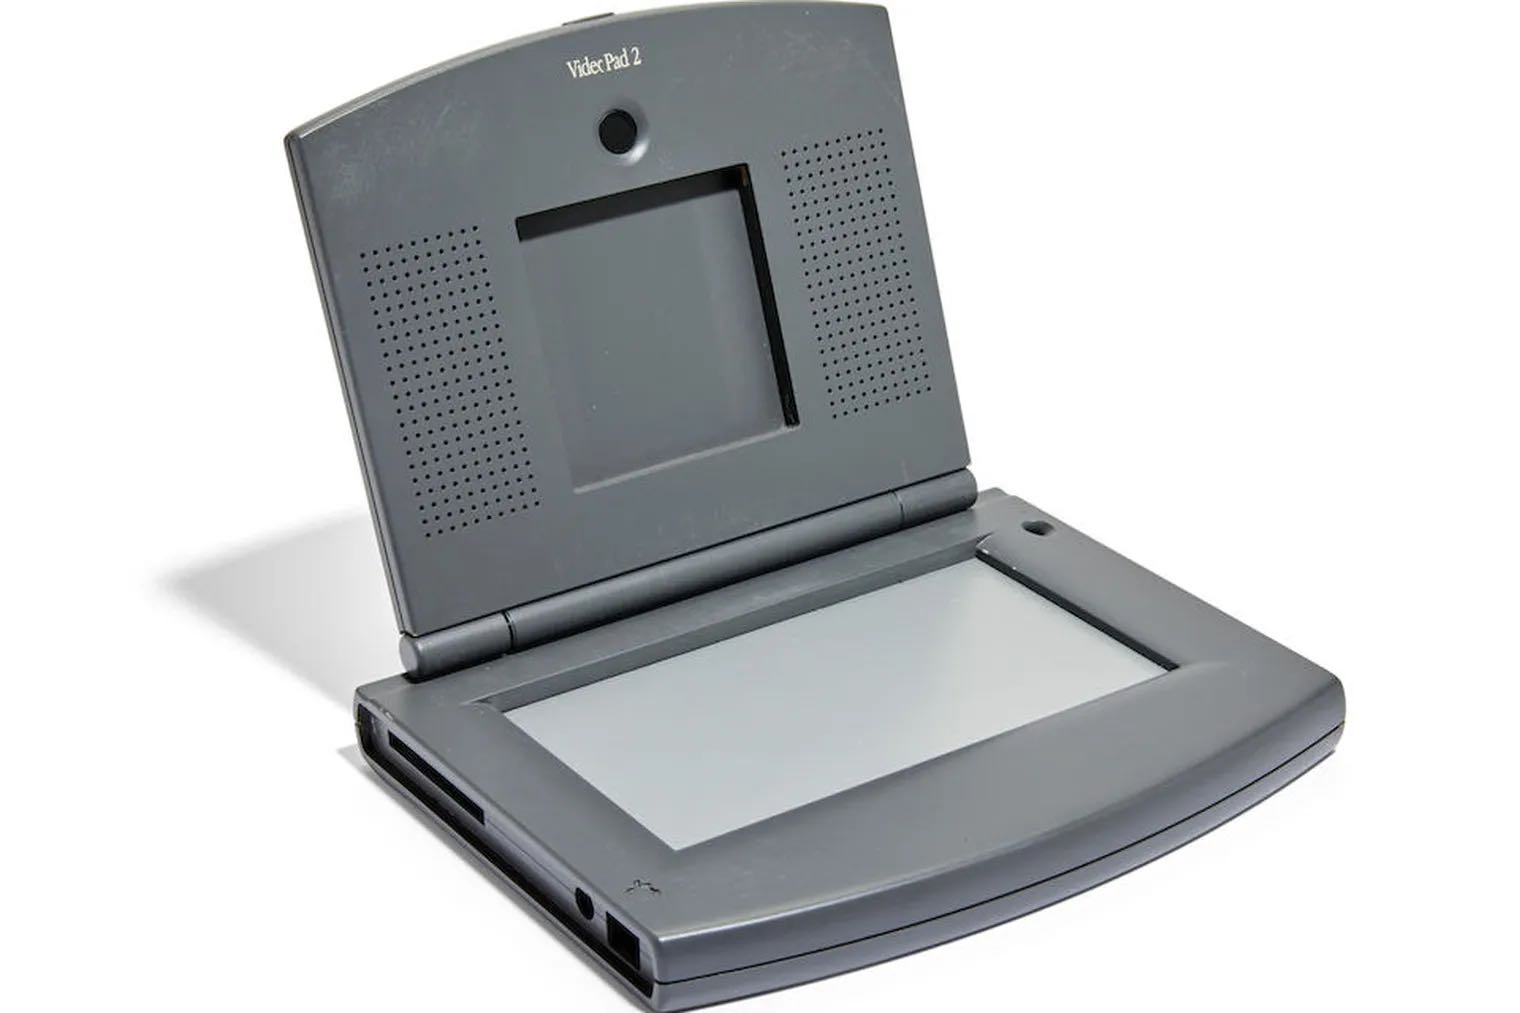 Le prototype rare de l'Apple VideoPad 2 sera mis aux enchères